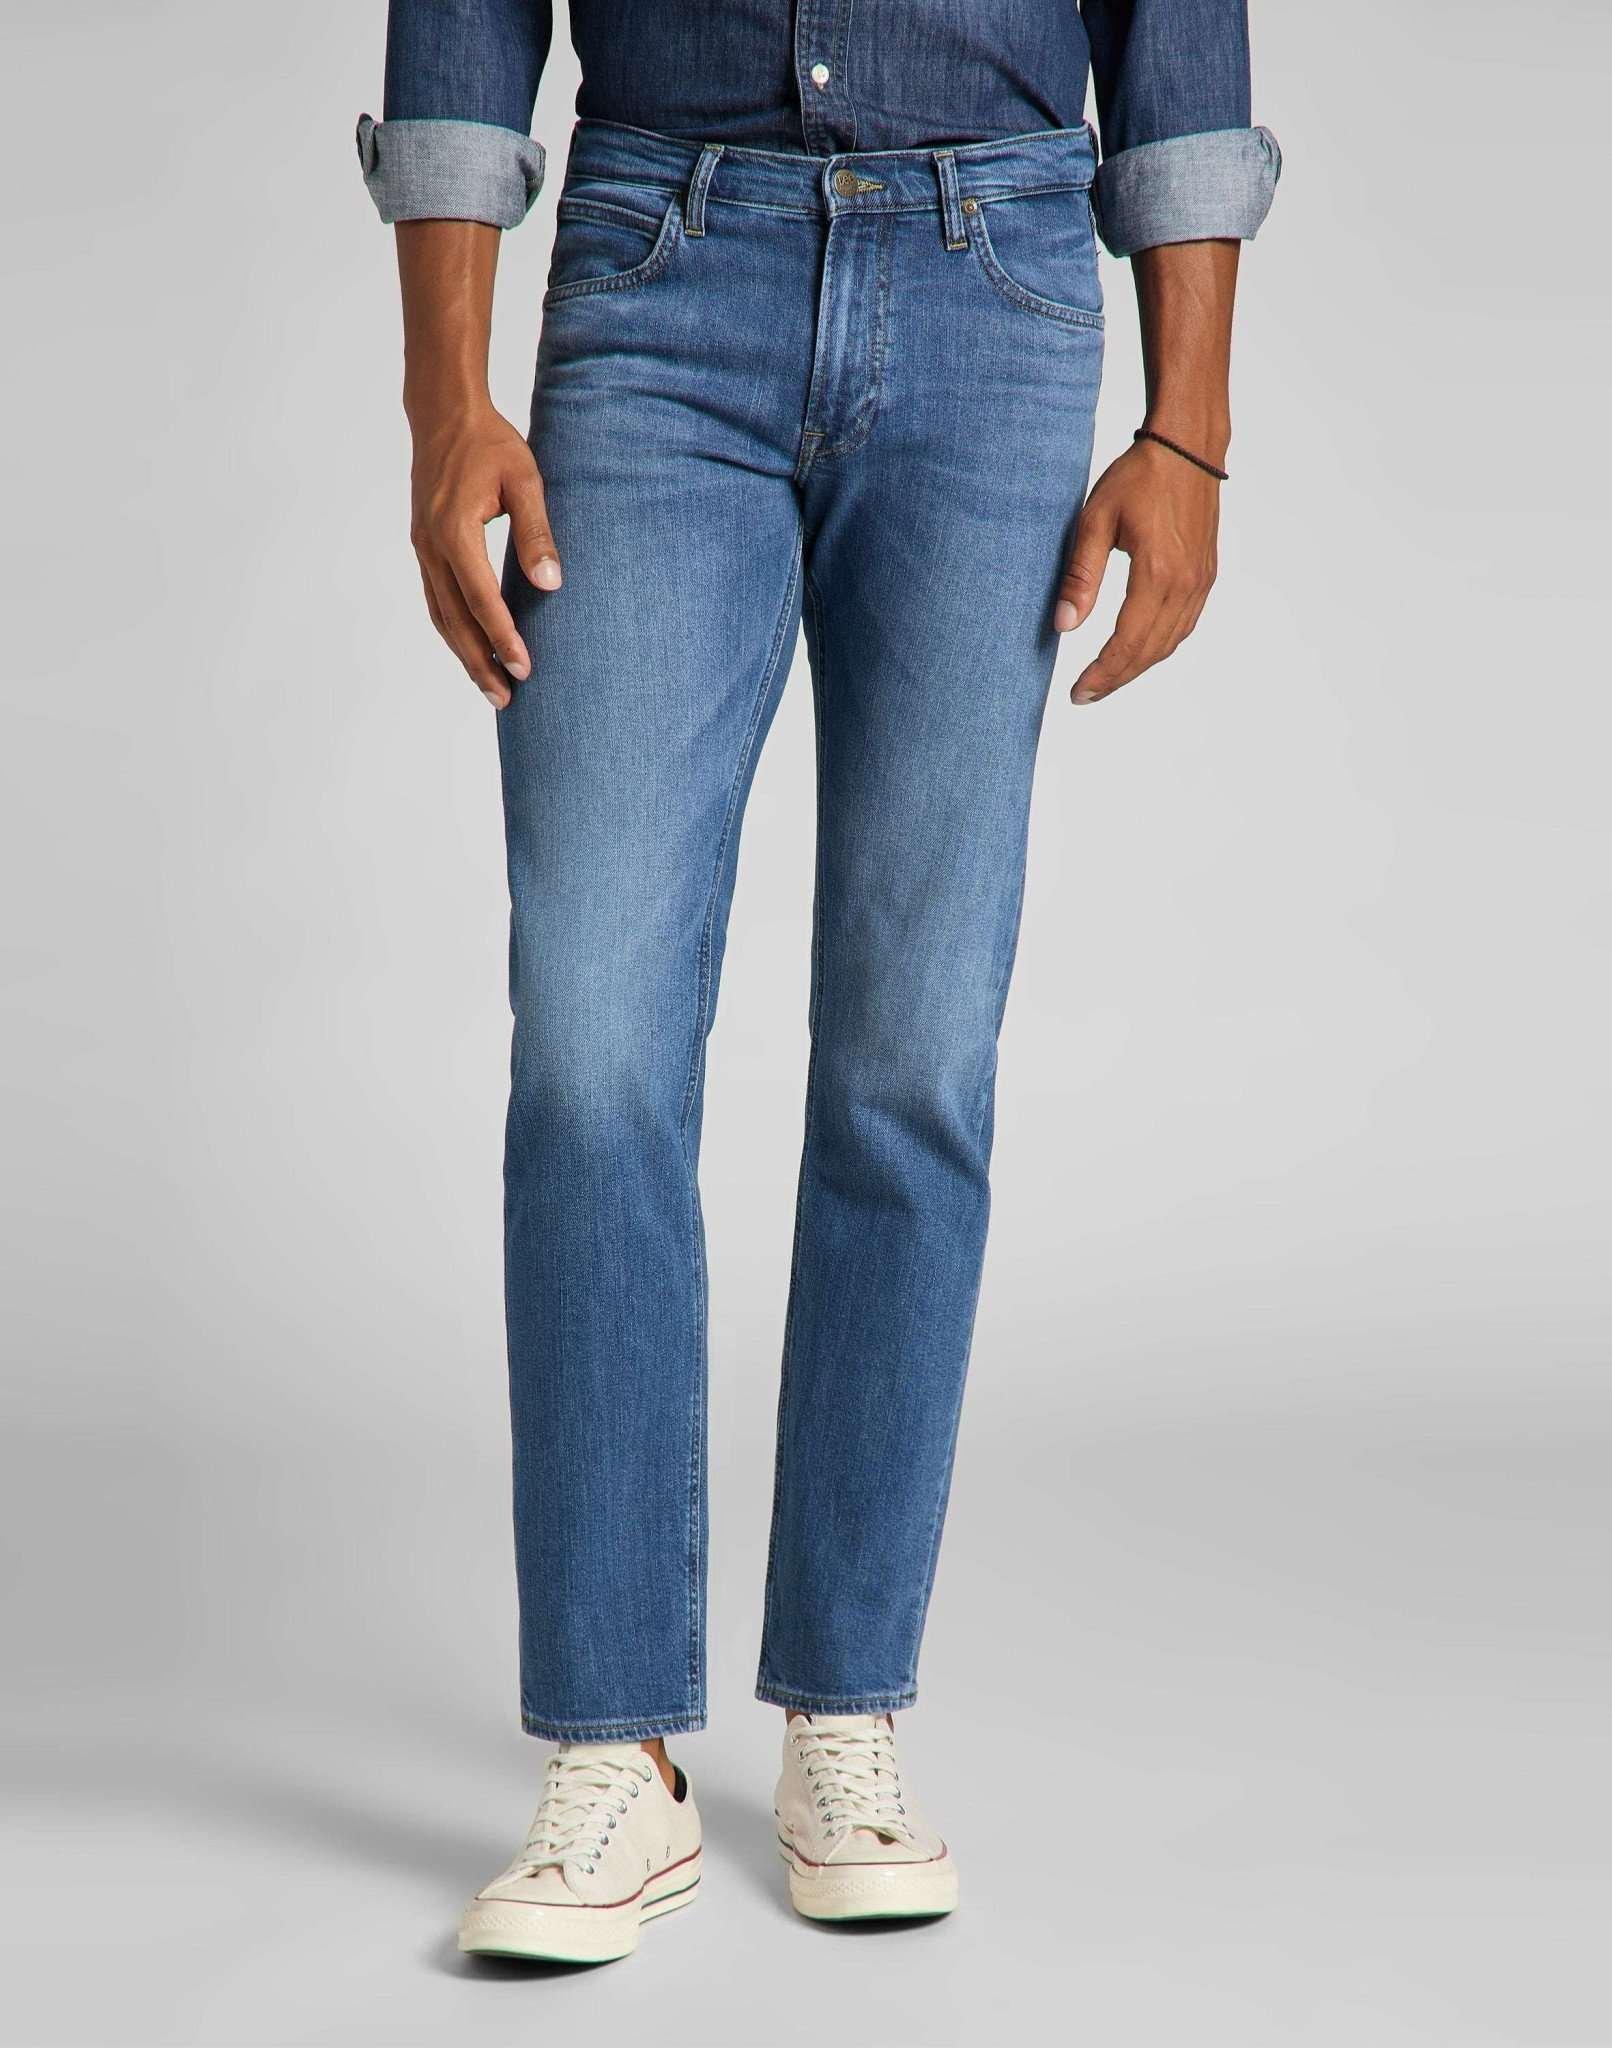 Jeans Straight Leg Daren Herren Blau Denim L30/W30 von Lee